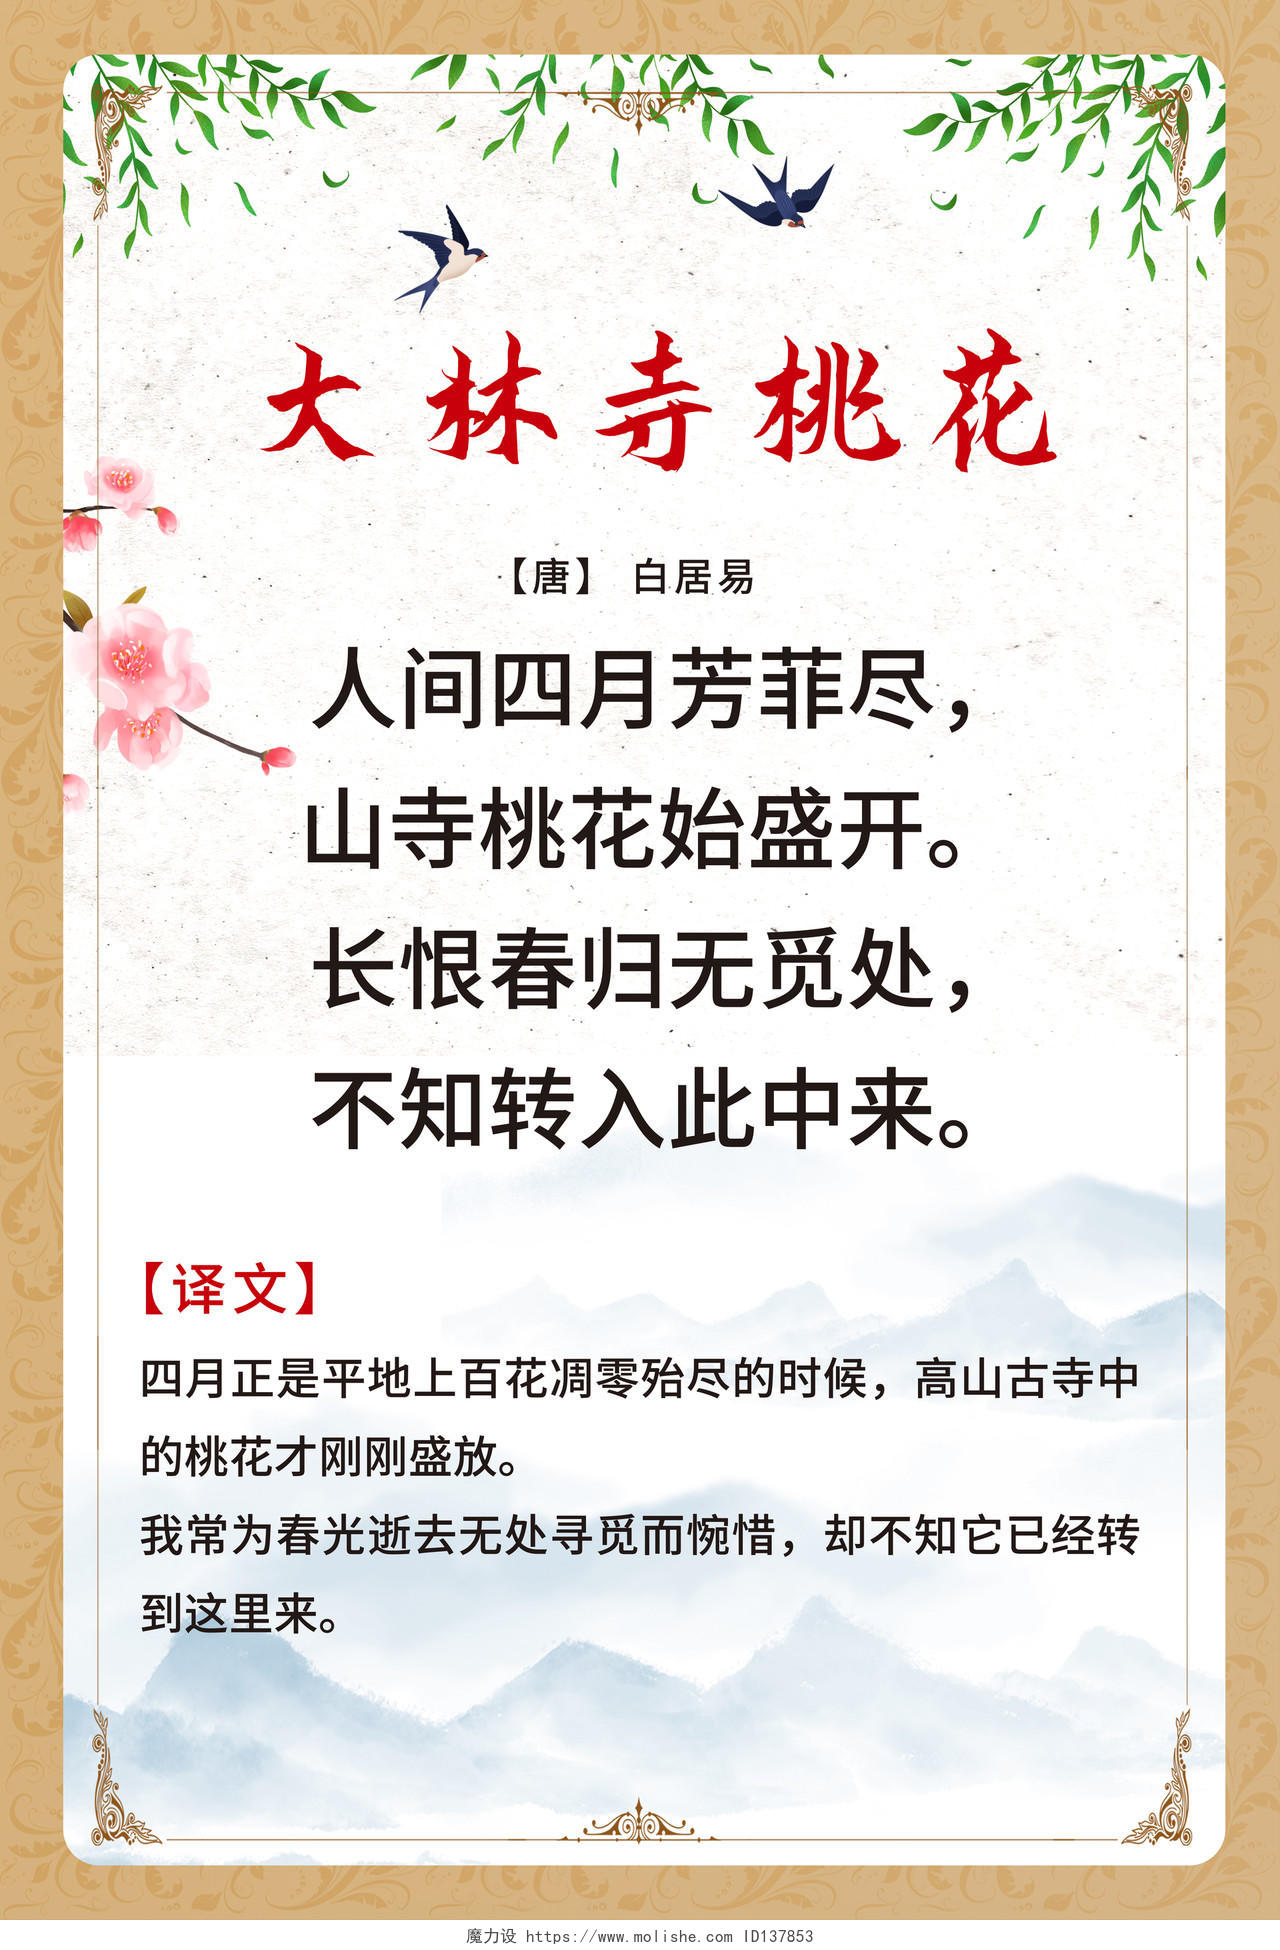 灰白色背景创意简洁中国古诗大林寺桃花宣传海报设计唐诗